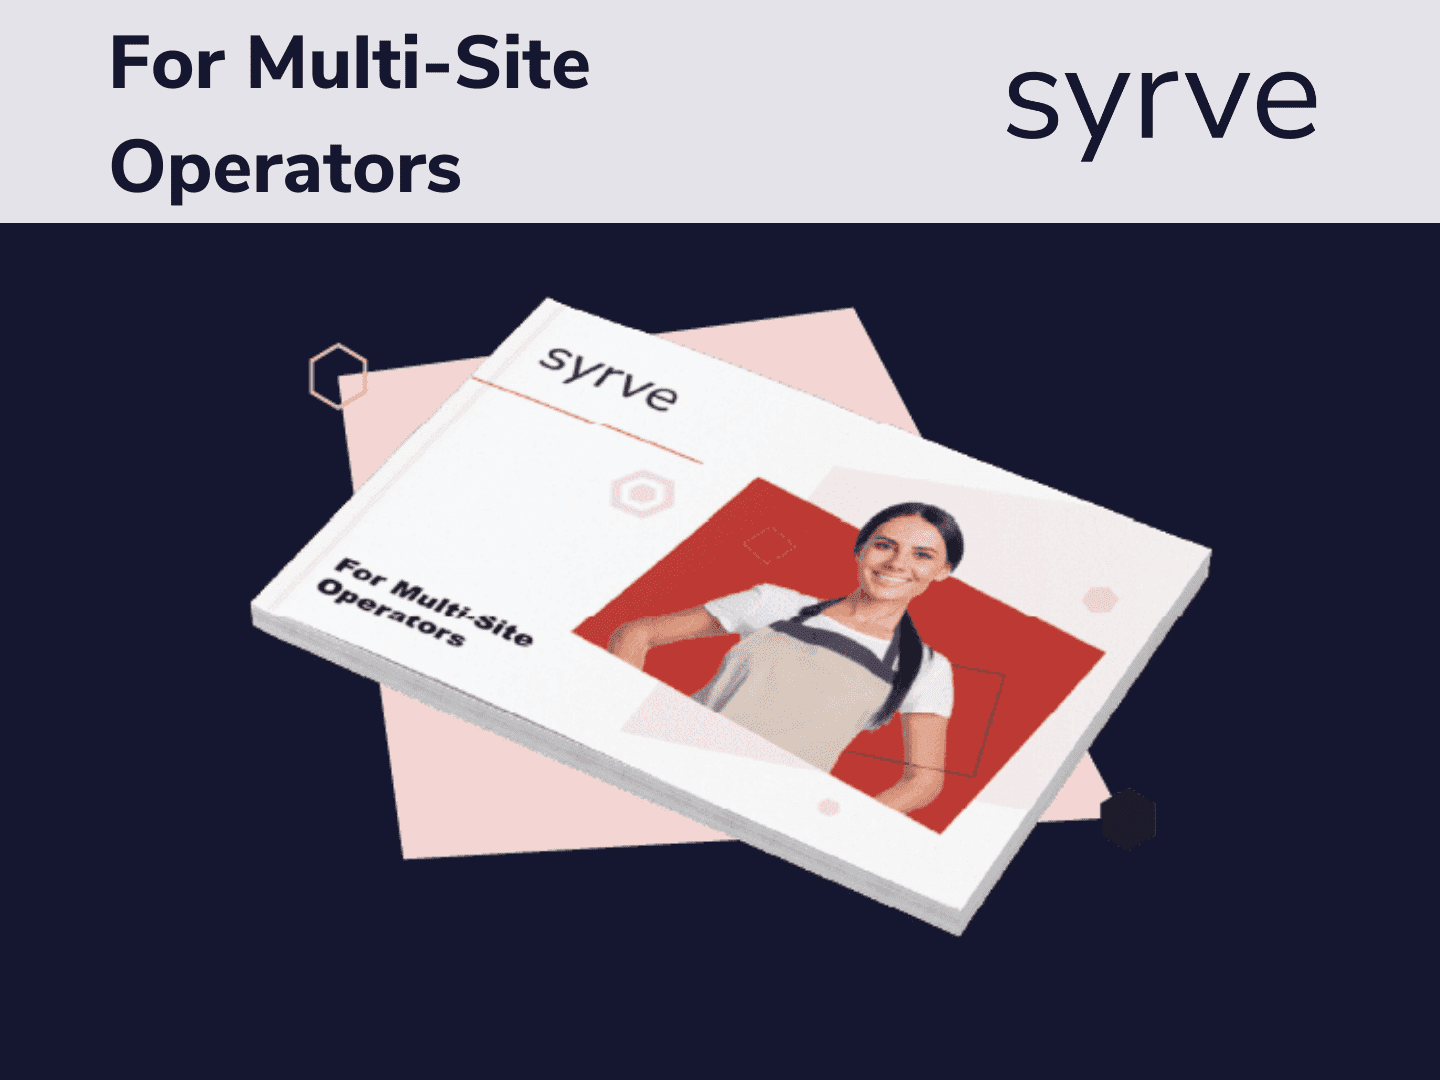 For Multi-Site Operators